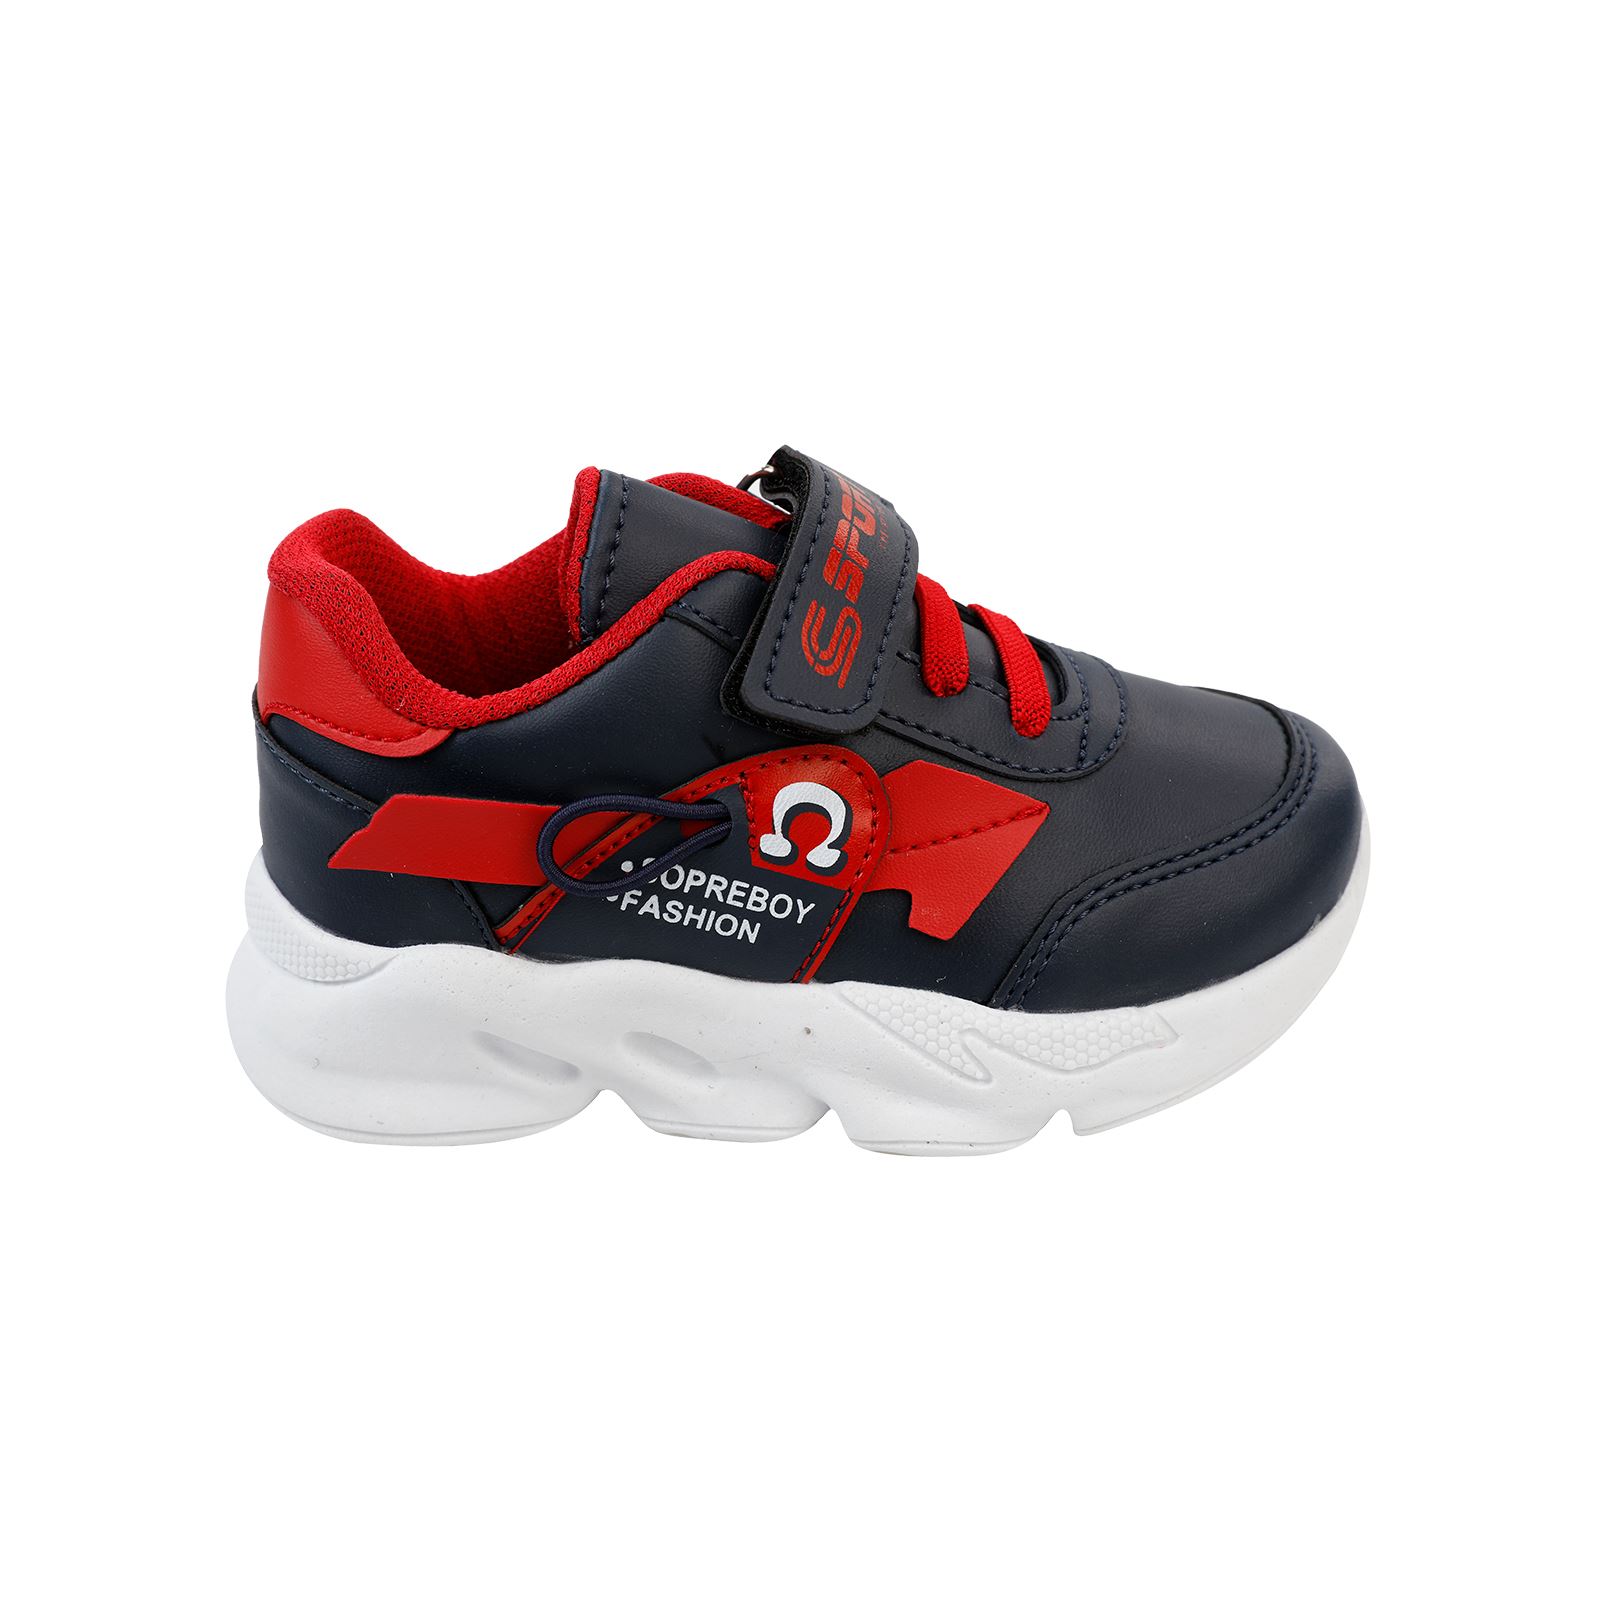 Sport Erkek Çocuk Spor Ayakkabı 30-35 Numara Lacivert-Kırmızı